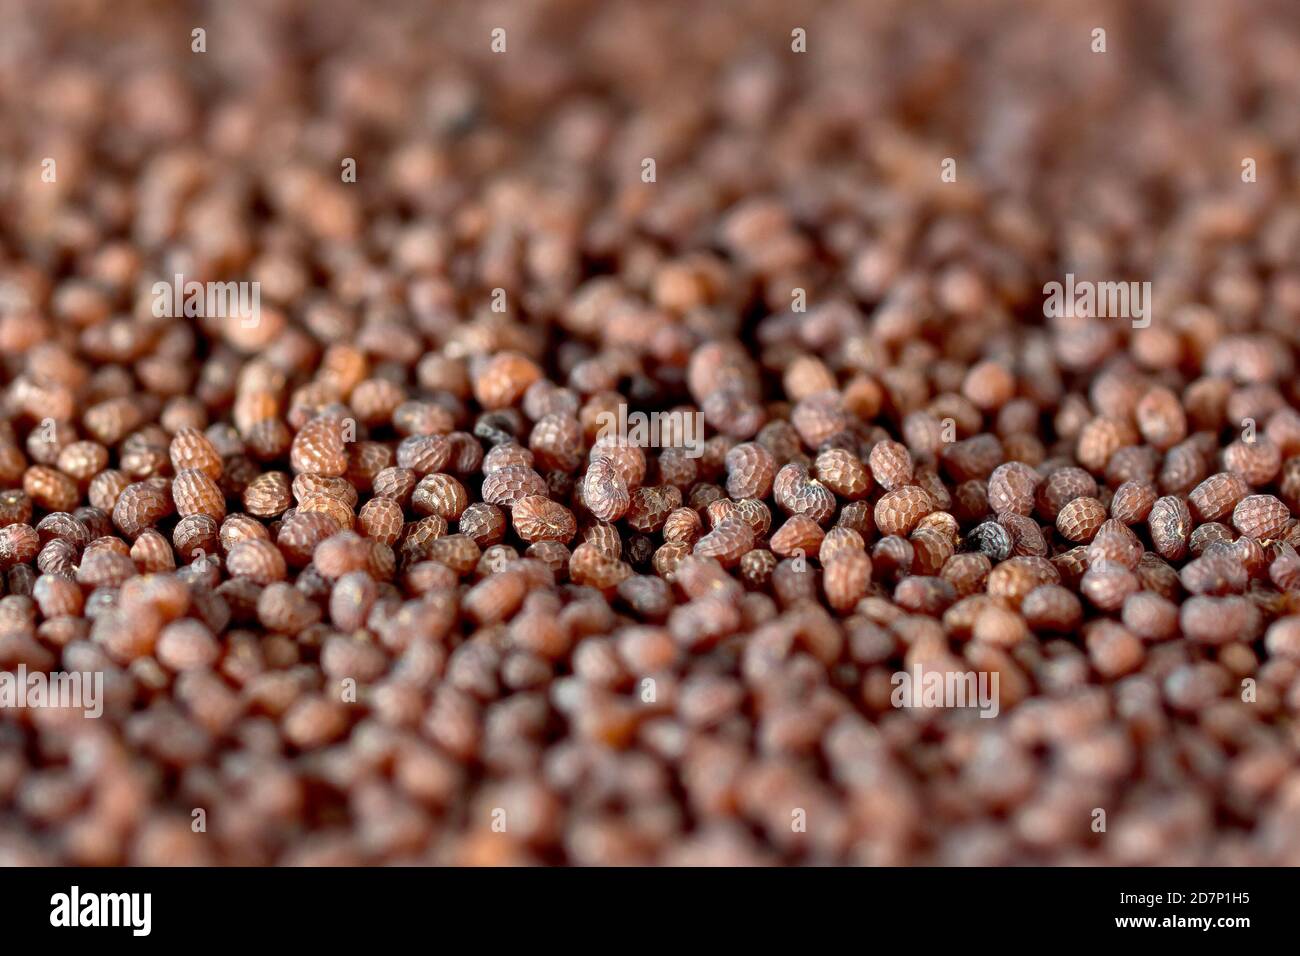 Primer plano mostrando una masa de semillas recolectadas de la amapola de cabeza larga (papaver dubium). Foto de stock